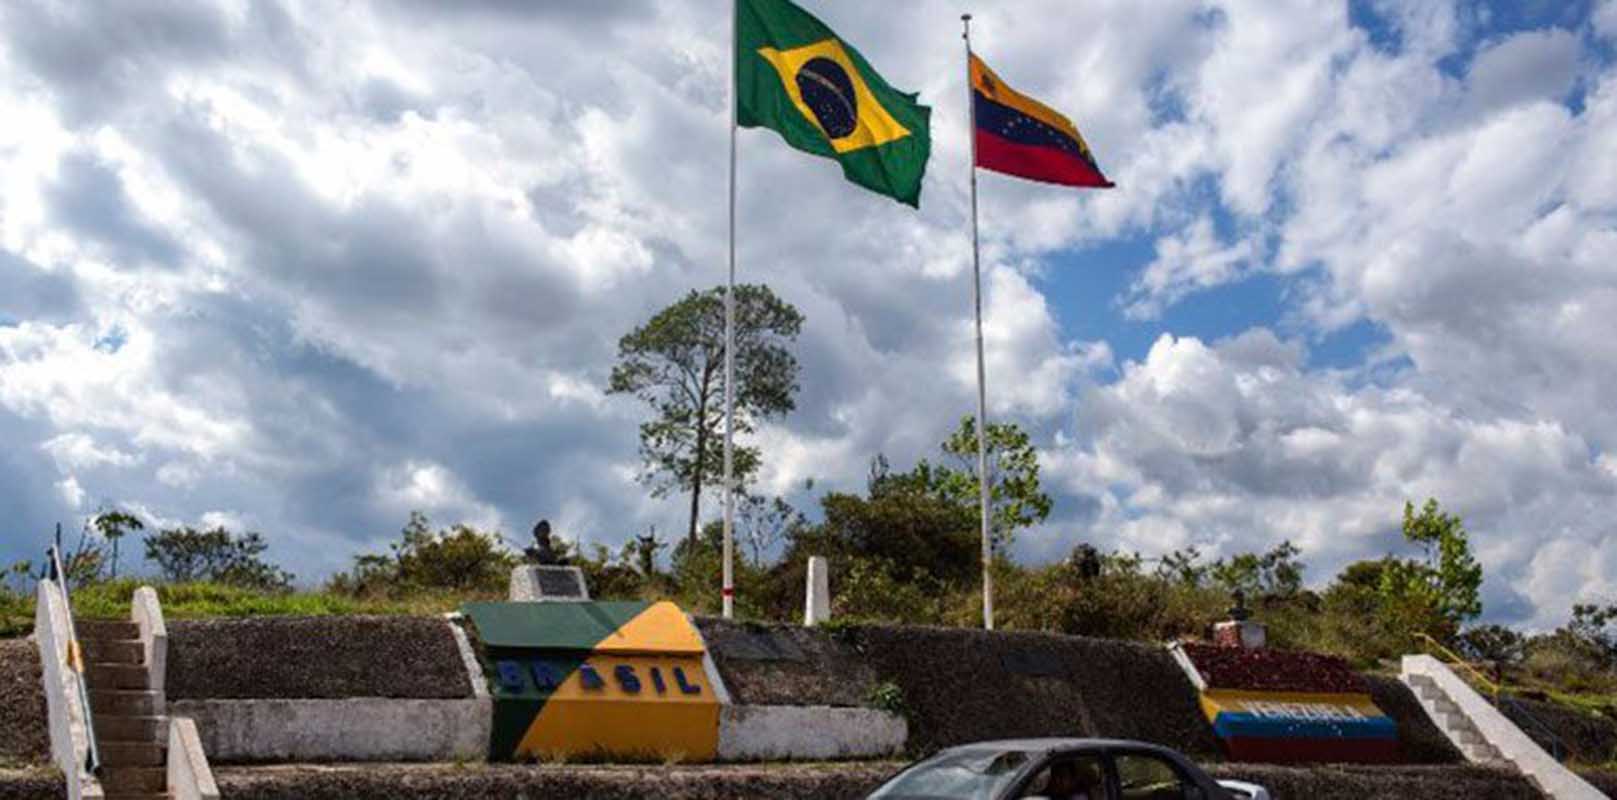 Venezolanos buscan refugio en un Brasil sin planes para ellos